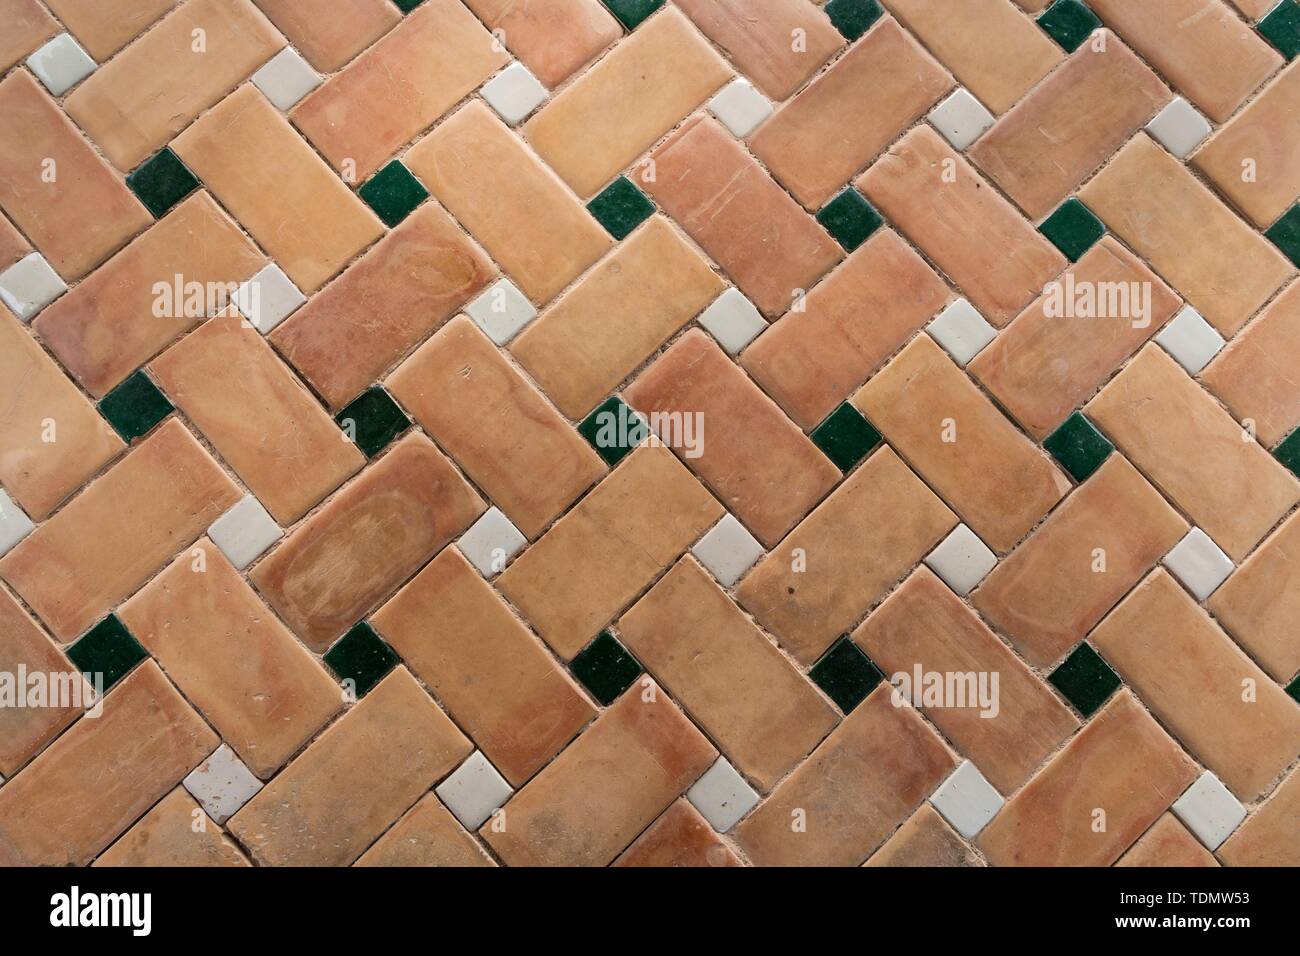 Vieux plancher avec motif carreaux carreaux posés selon Roman bond, Grenade, Andalousie, Espagne Banque D'Images